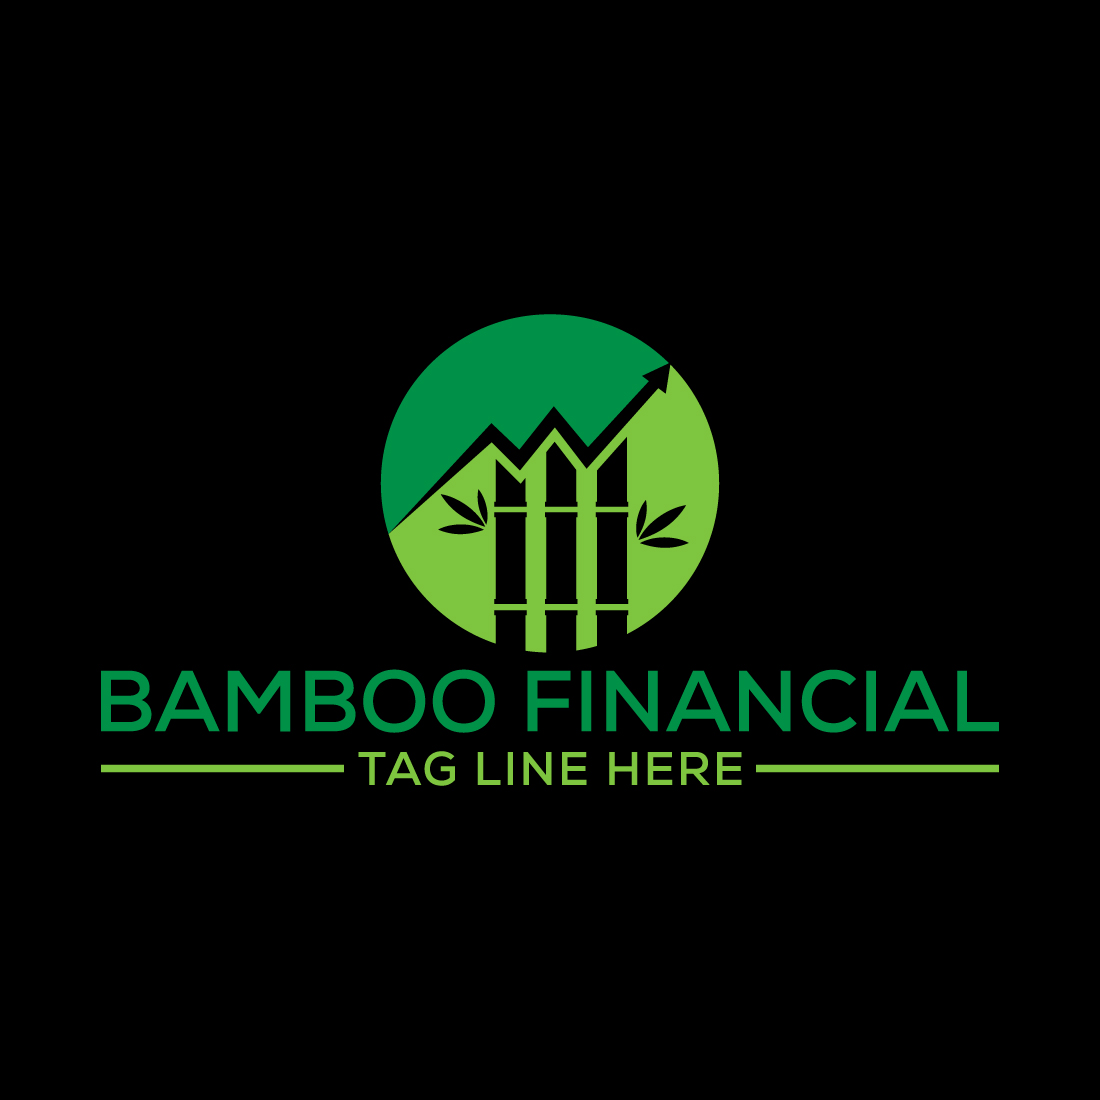 Bamboo Financial logo design, Vector design template cover image.